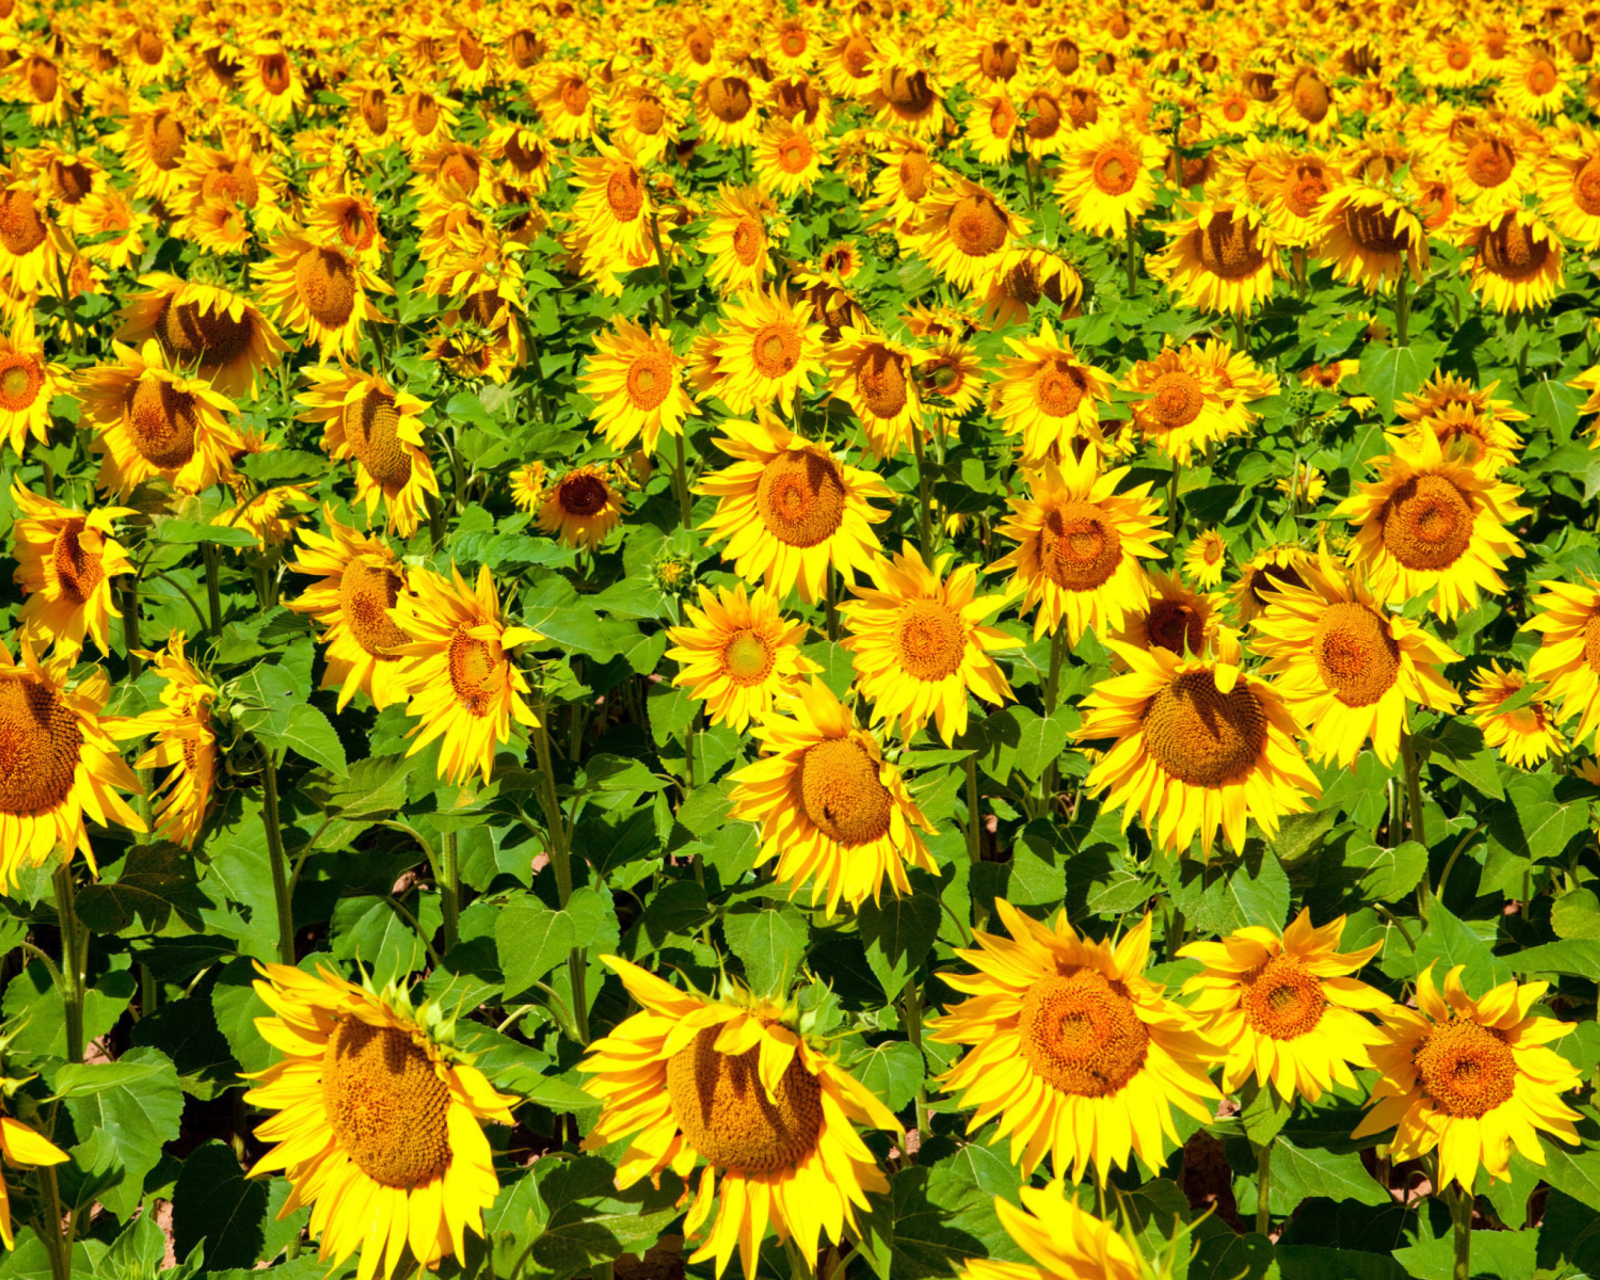 Das Golden Sunflower Field Wallpaper 1600x1280